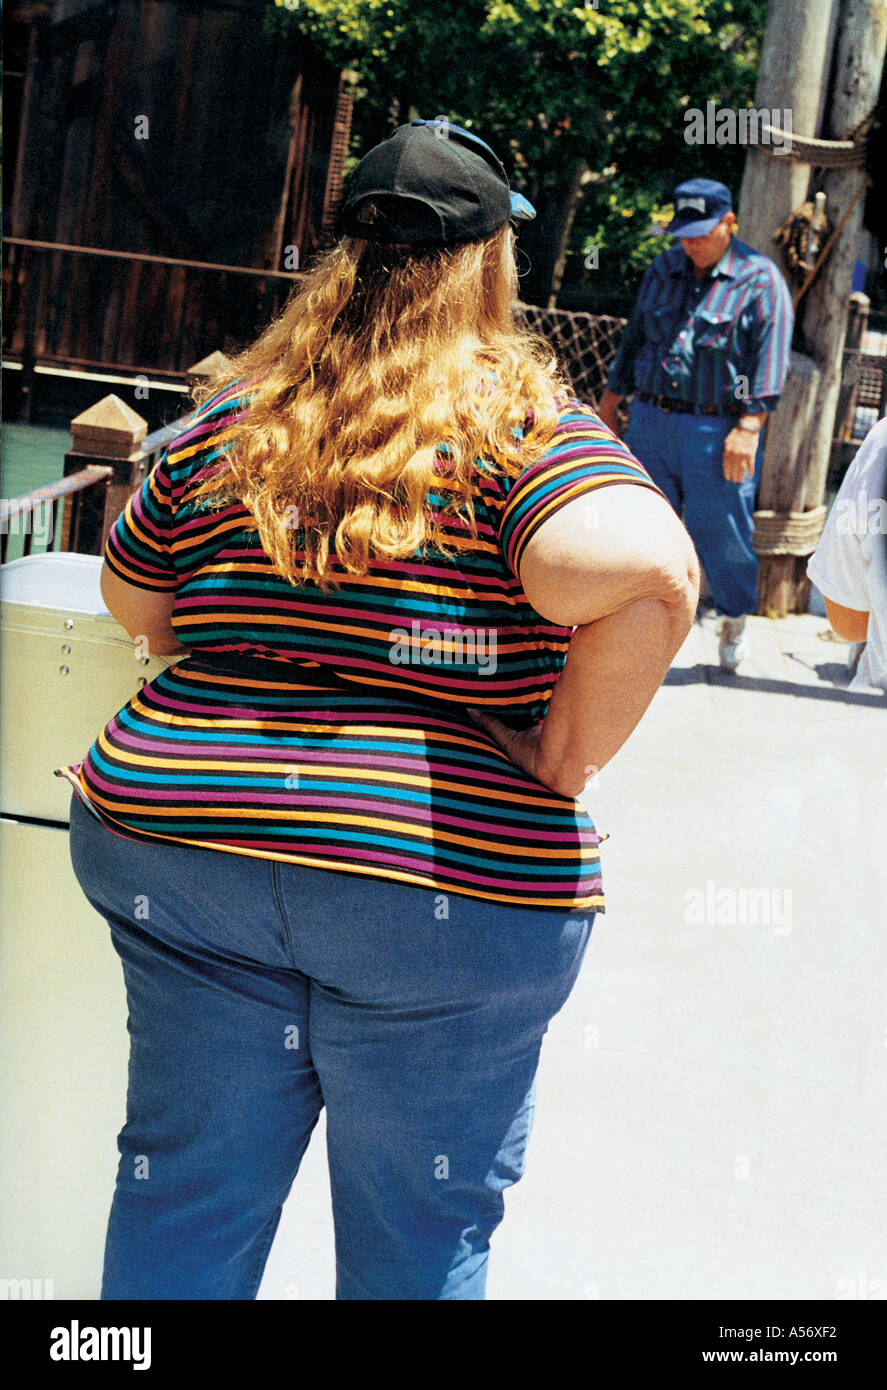 Les femmes obèses graisse femme drôle en jeans Times Square New York New York NY NY USA Etats-Unis d'Amérique American Americana 1999 Banque D'Images